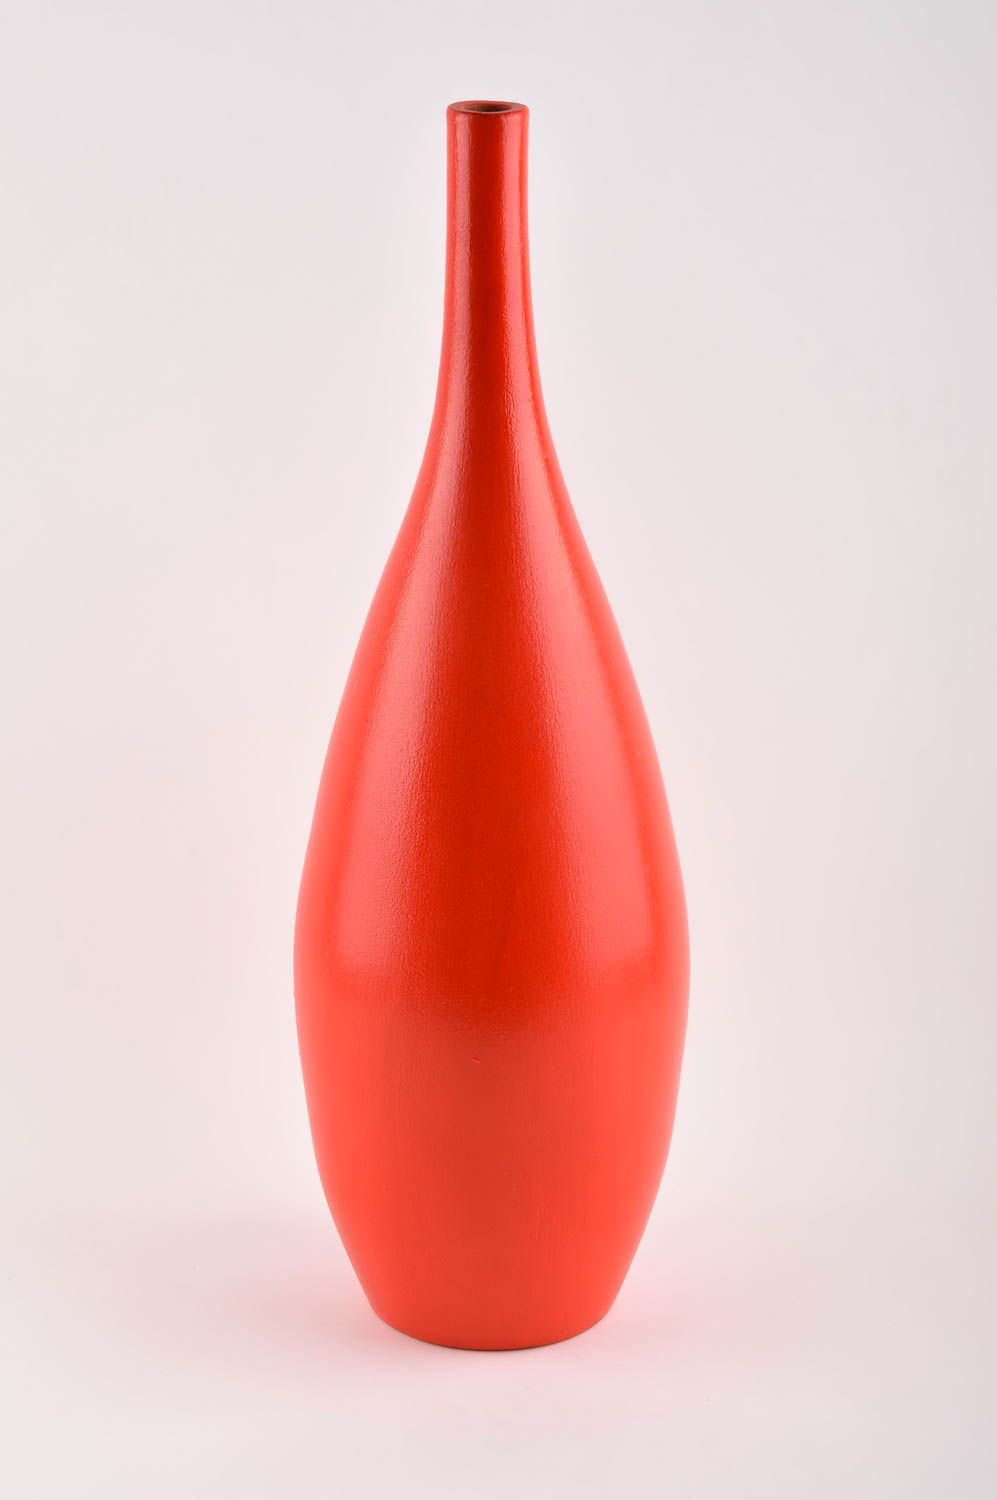 Ceramic red flower vase, handicraft creative flower tall 7-inch vase for living room photo 2